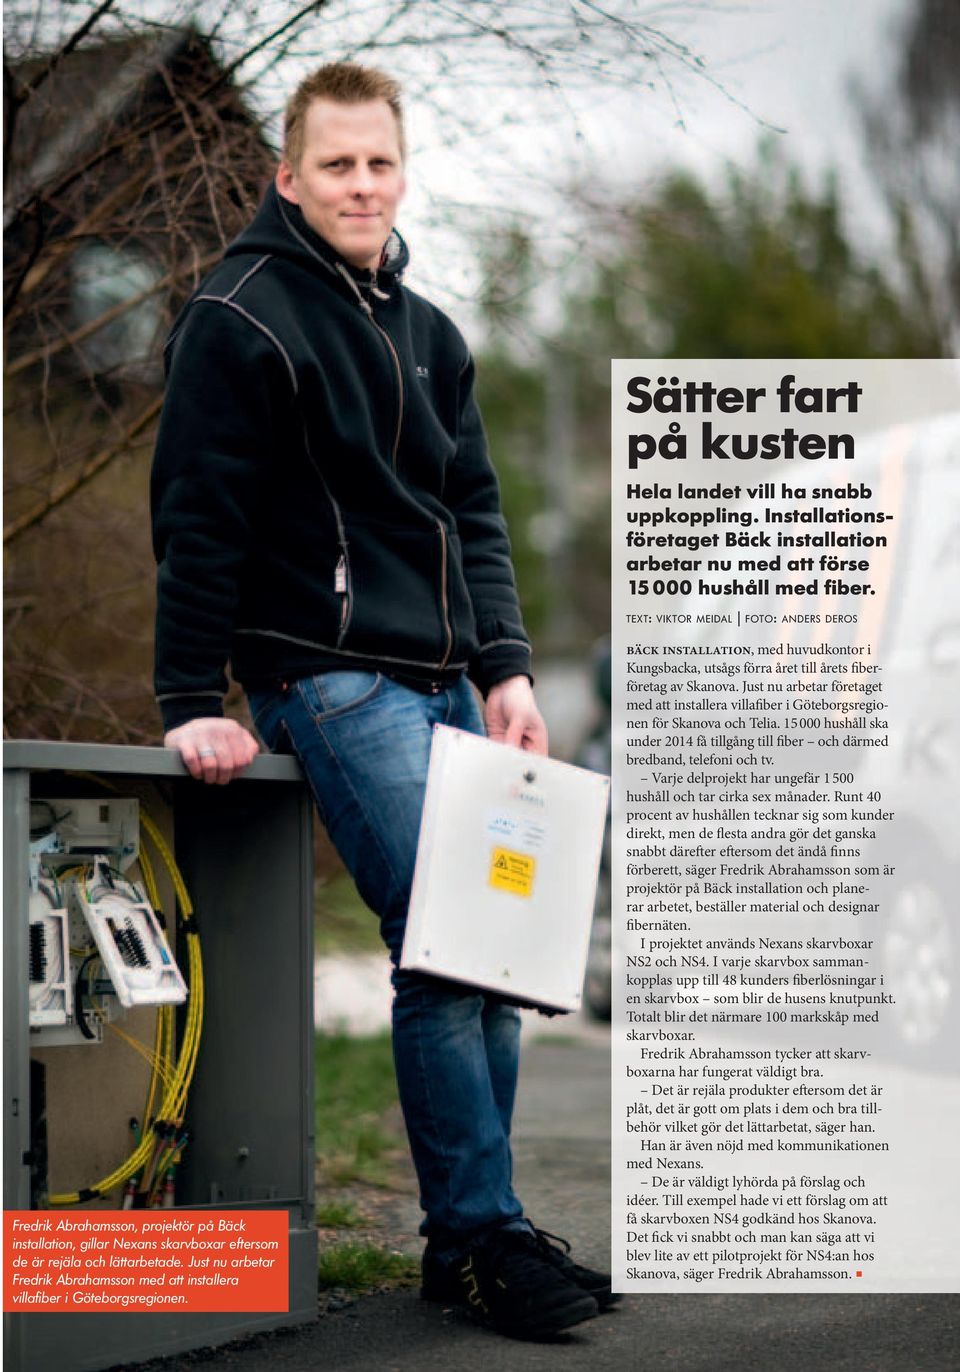 Just nu arbetar Fredrik Abrahamsson med att installera villafiber i Göteborgsregionen. bäck installation, med huvudkontor i Kungsbacka, utsågs förra året till årets fiberföretag av Skanova.